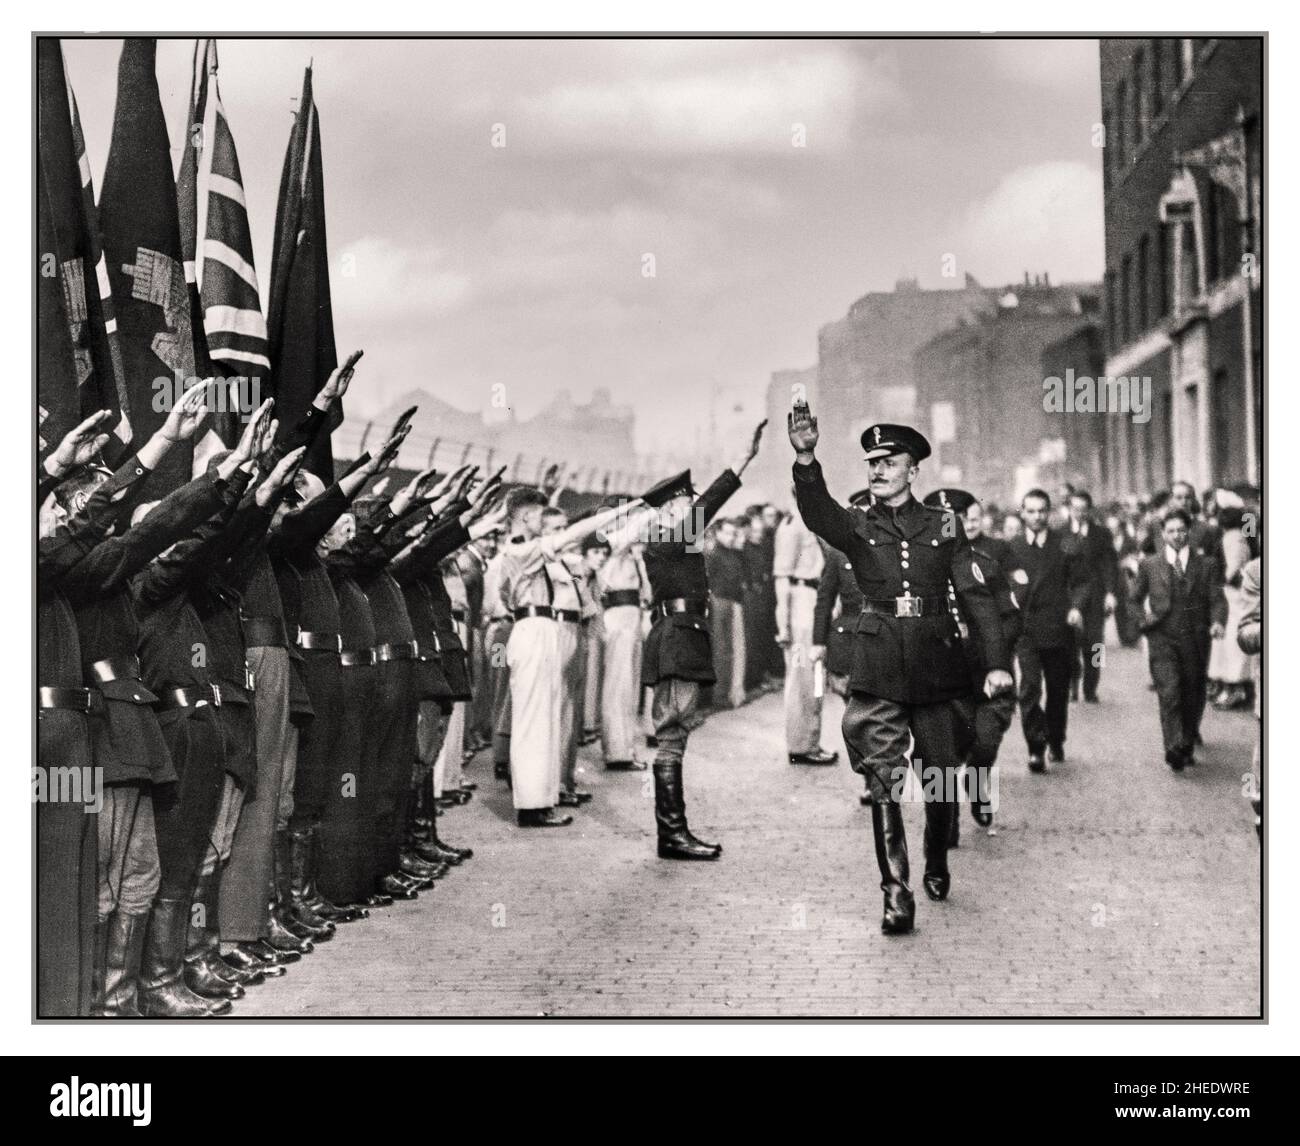 Oswald MOSLEY BUF PARTEI 1930er Jahre Großbritannien Oswald Mosley, Führer der "British Union of Fascists", die einen rechtsextremen Nazi-Typ-Ruf von Anhängern während einer Fakisten-Kundgebung in London 1937 Leiter der British Union of Fascists einnahm Stockfoto